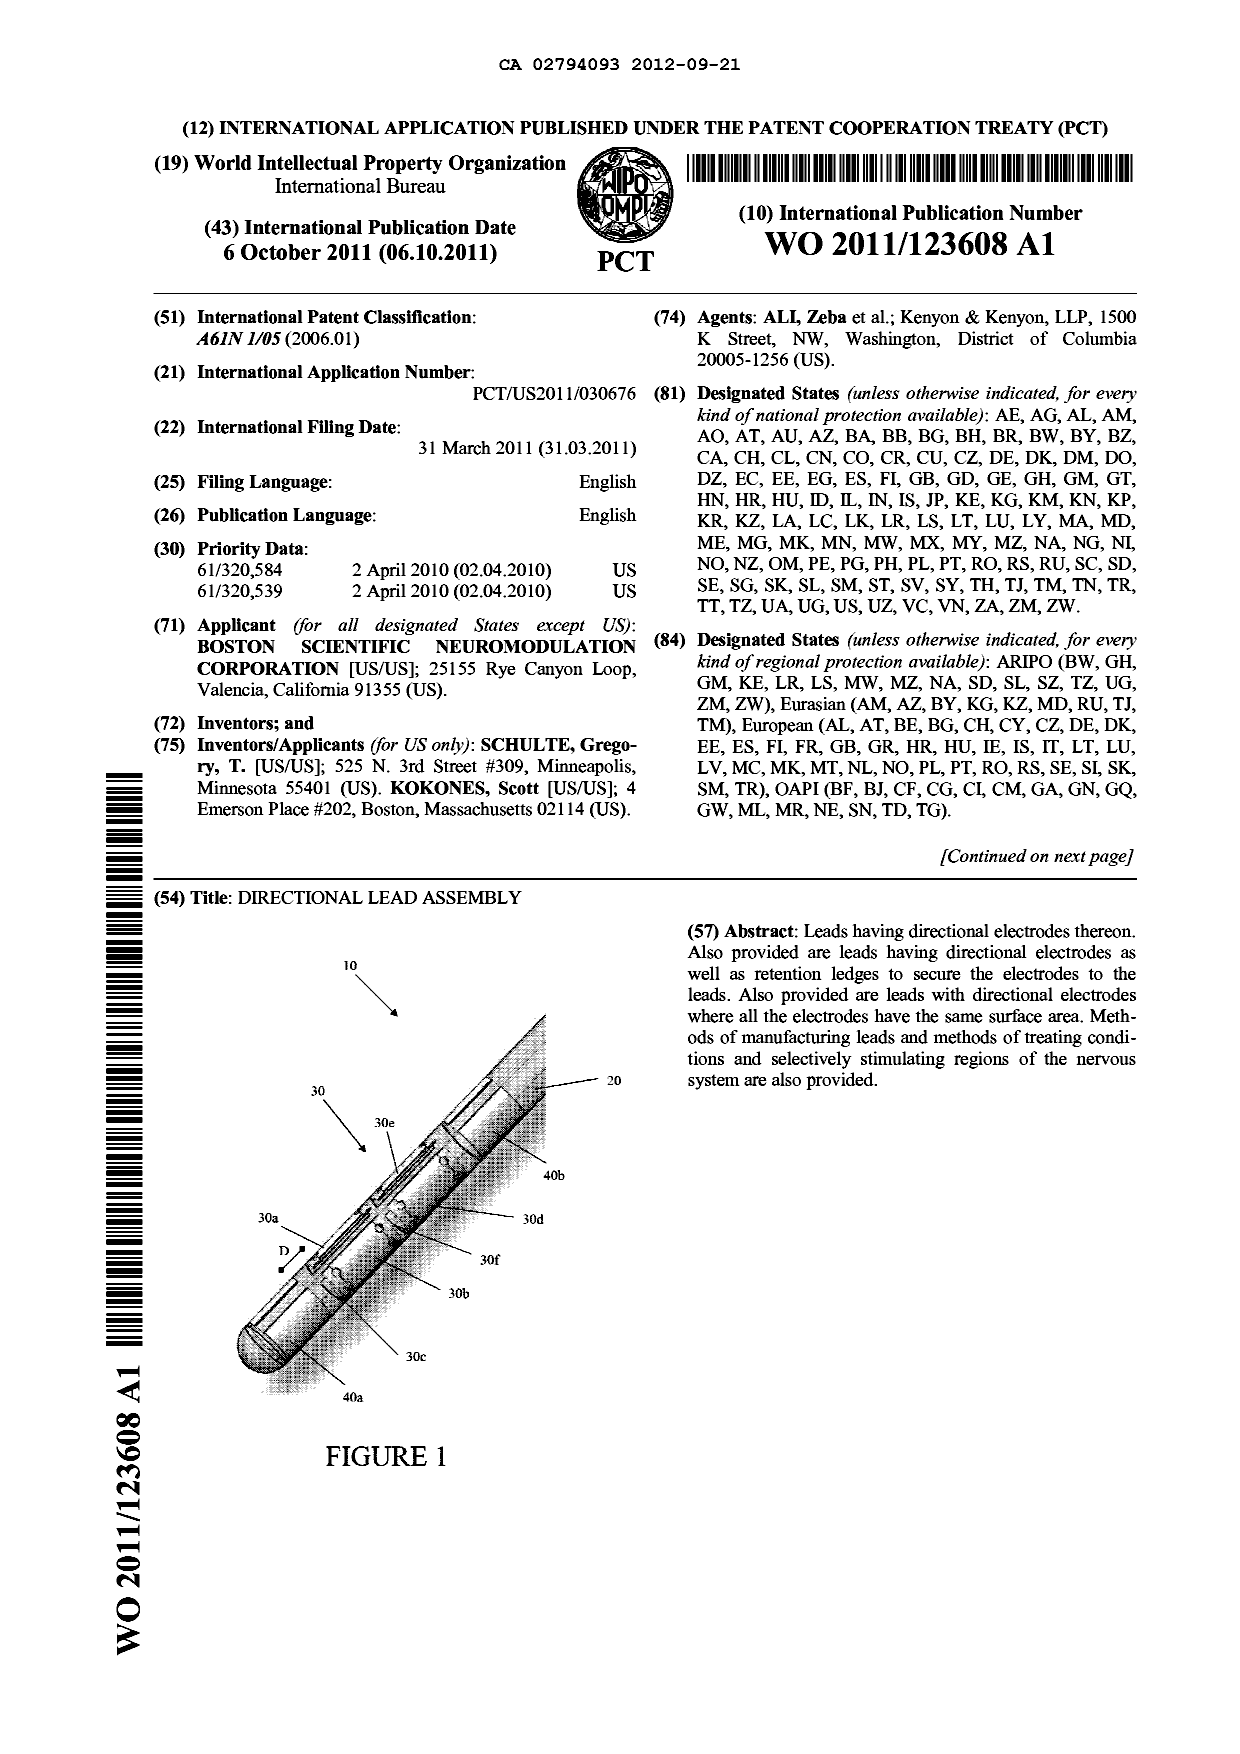 Document de brevet canadien 2794093. Abrégé 20120921. Image 1 de 2